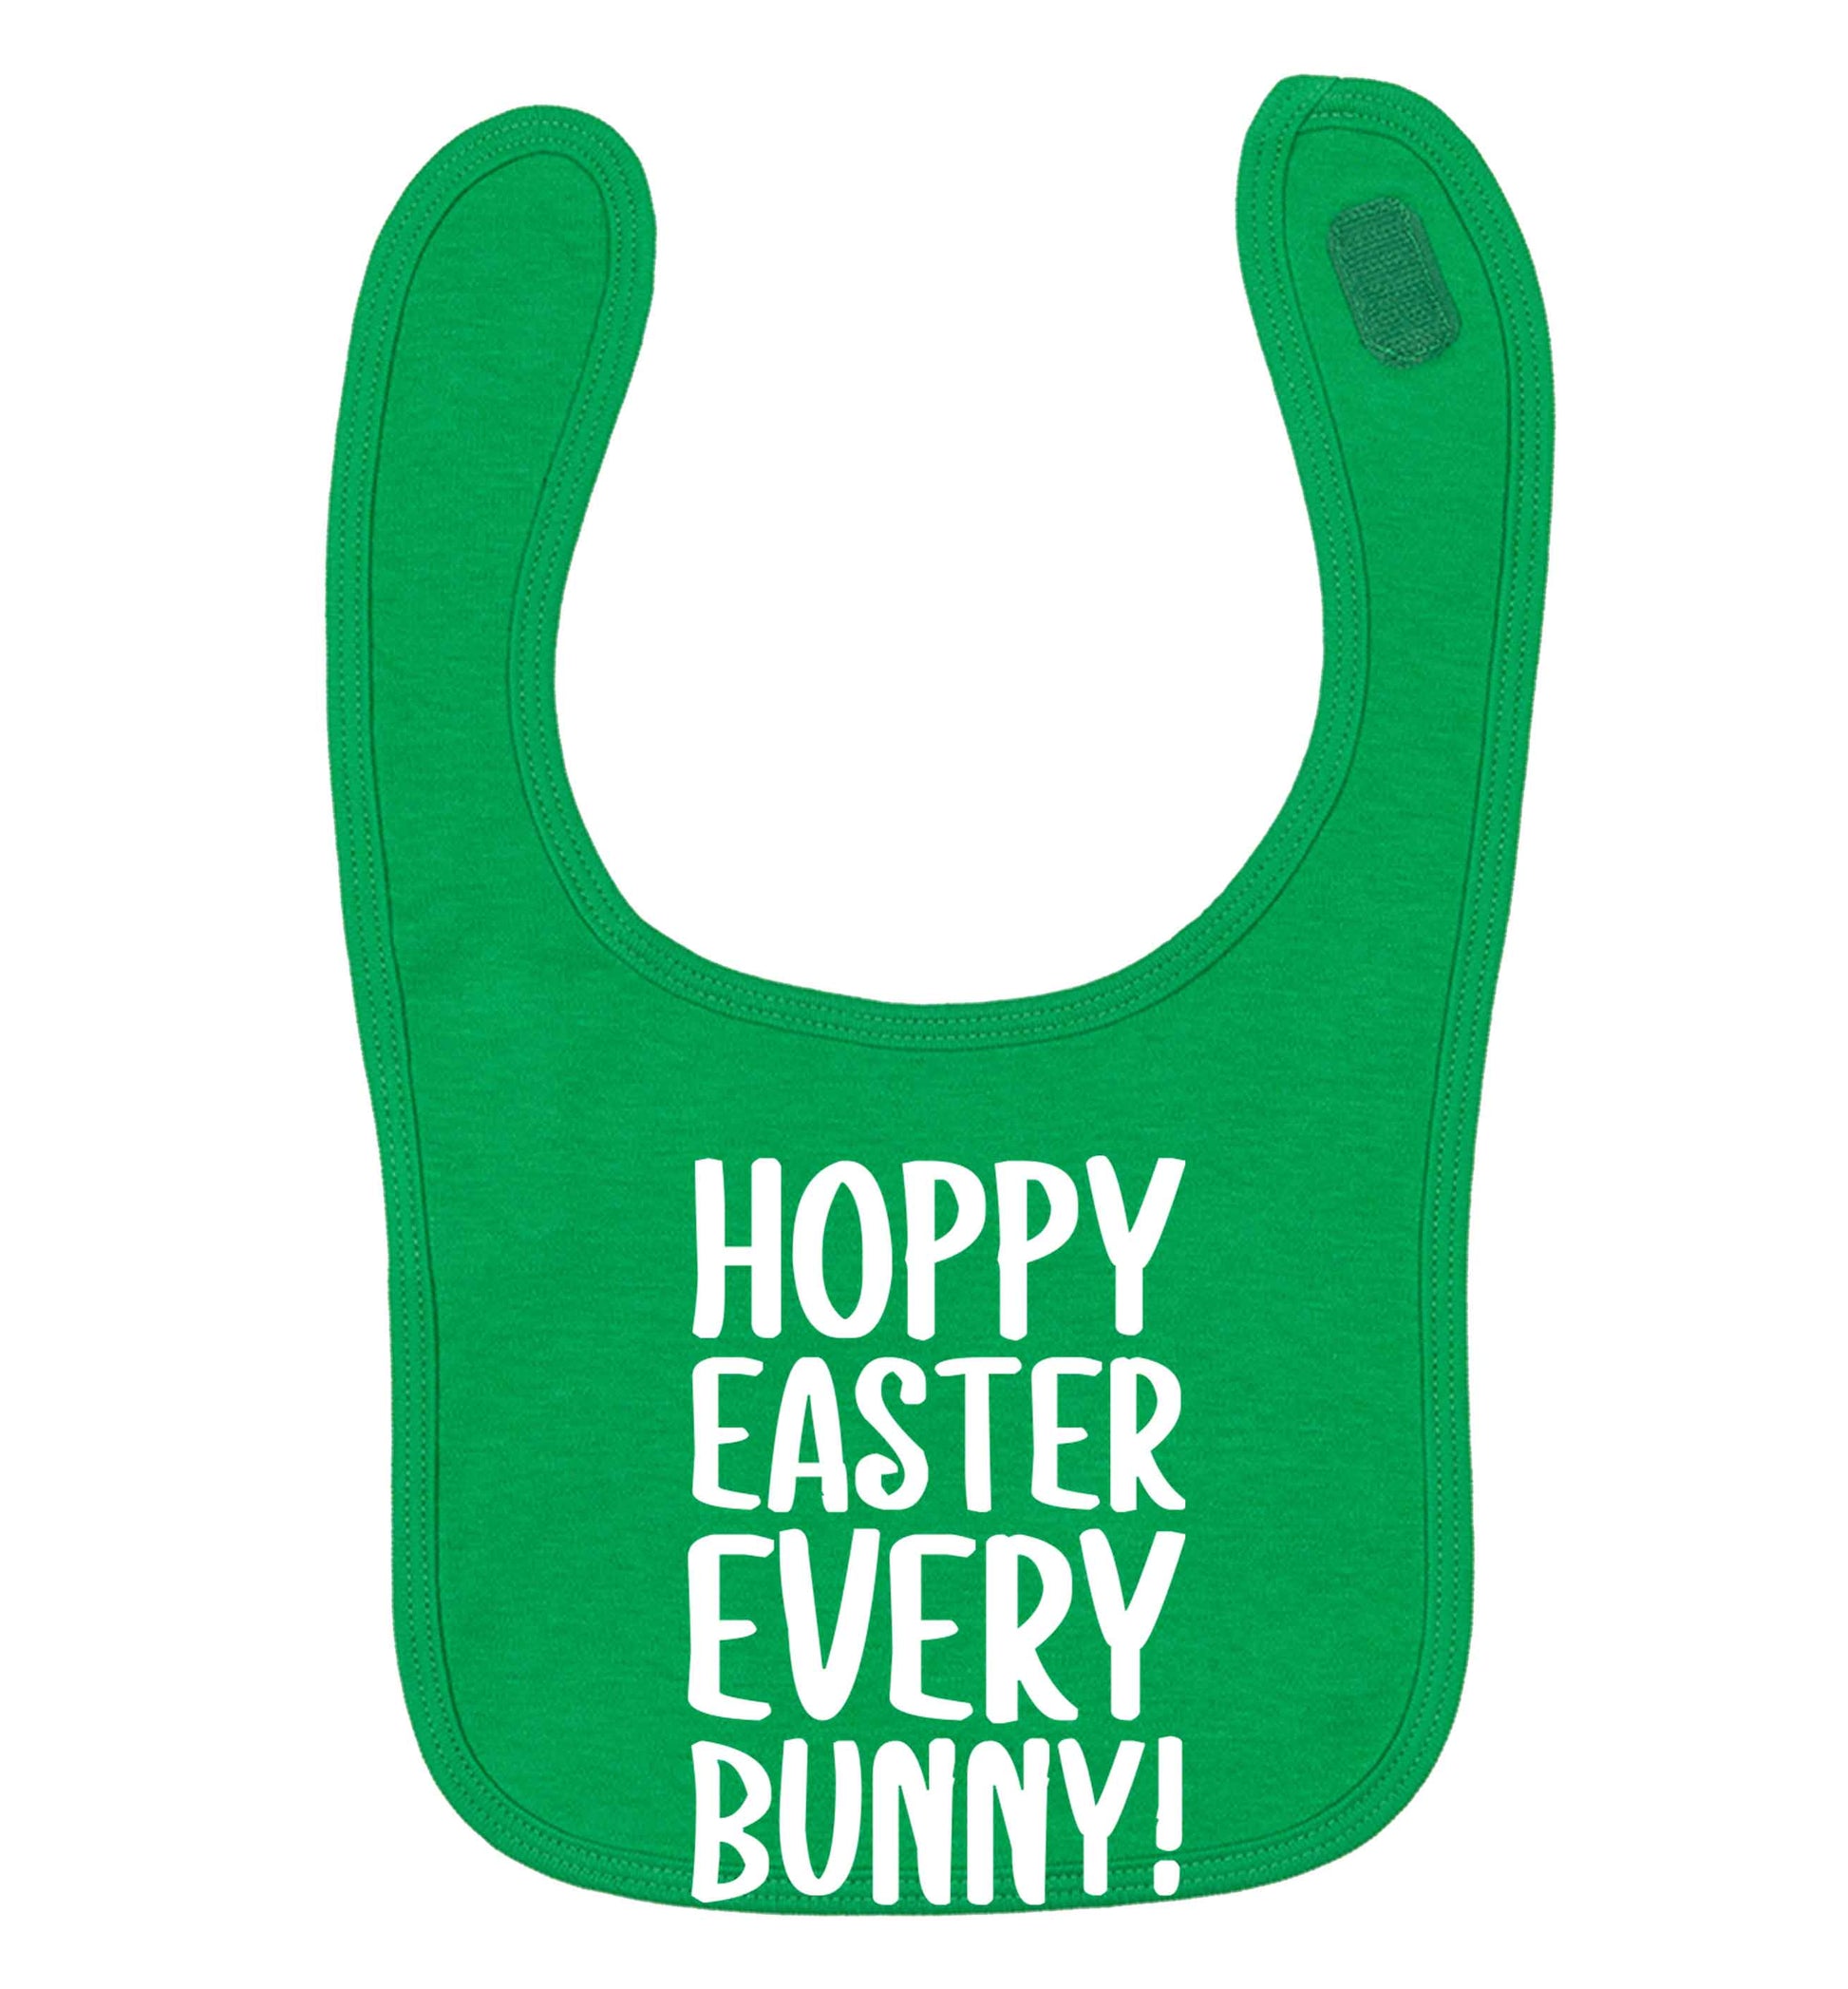 Hoppy Easter every bunny! green baby bib